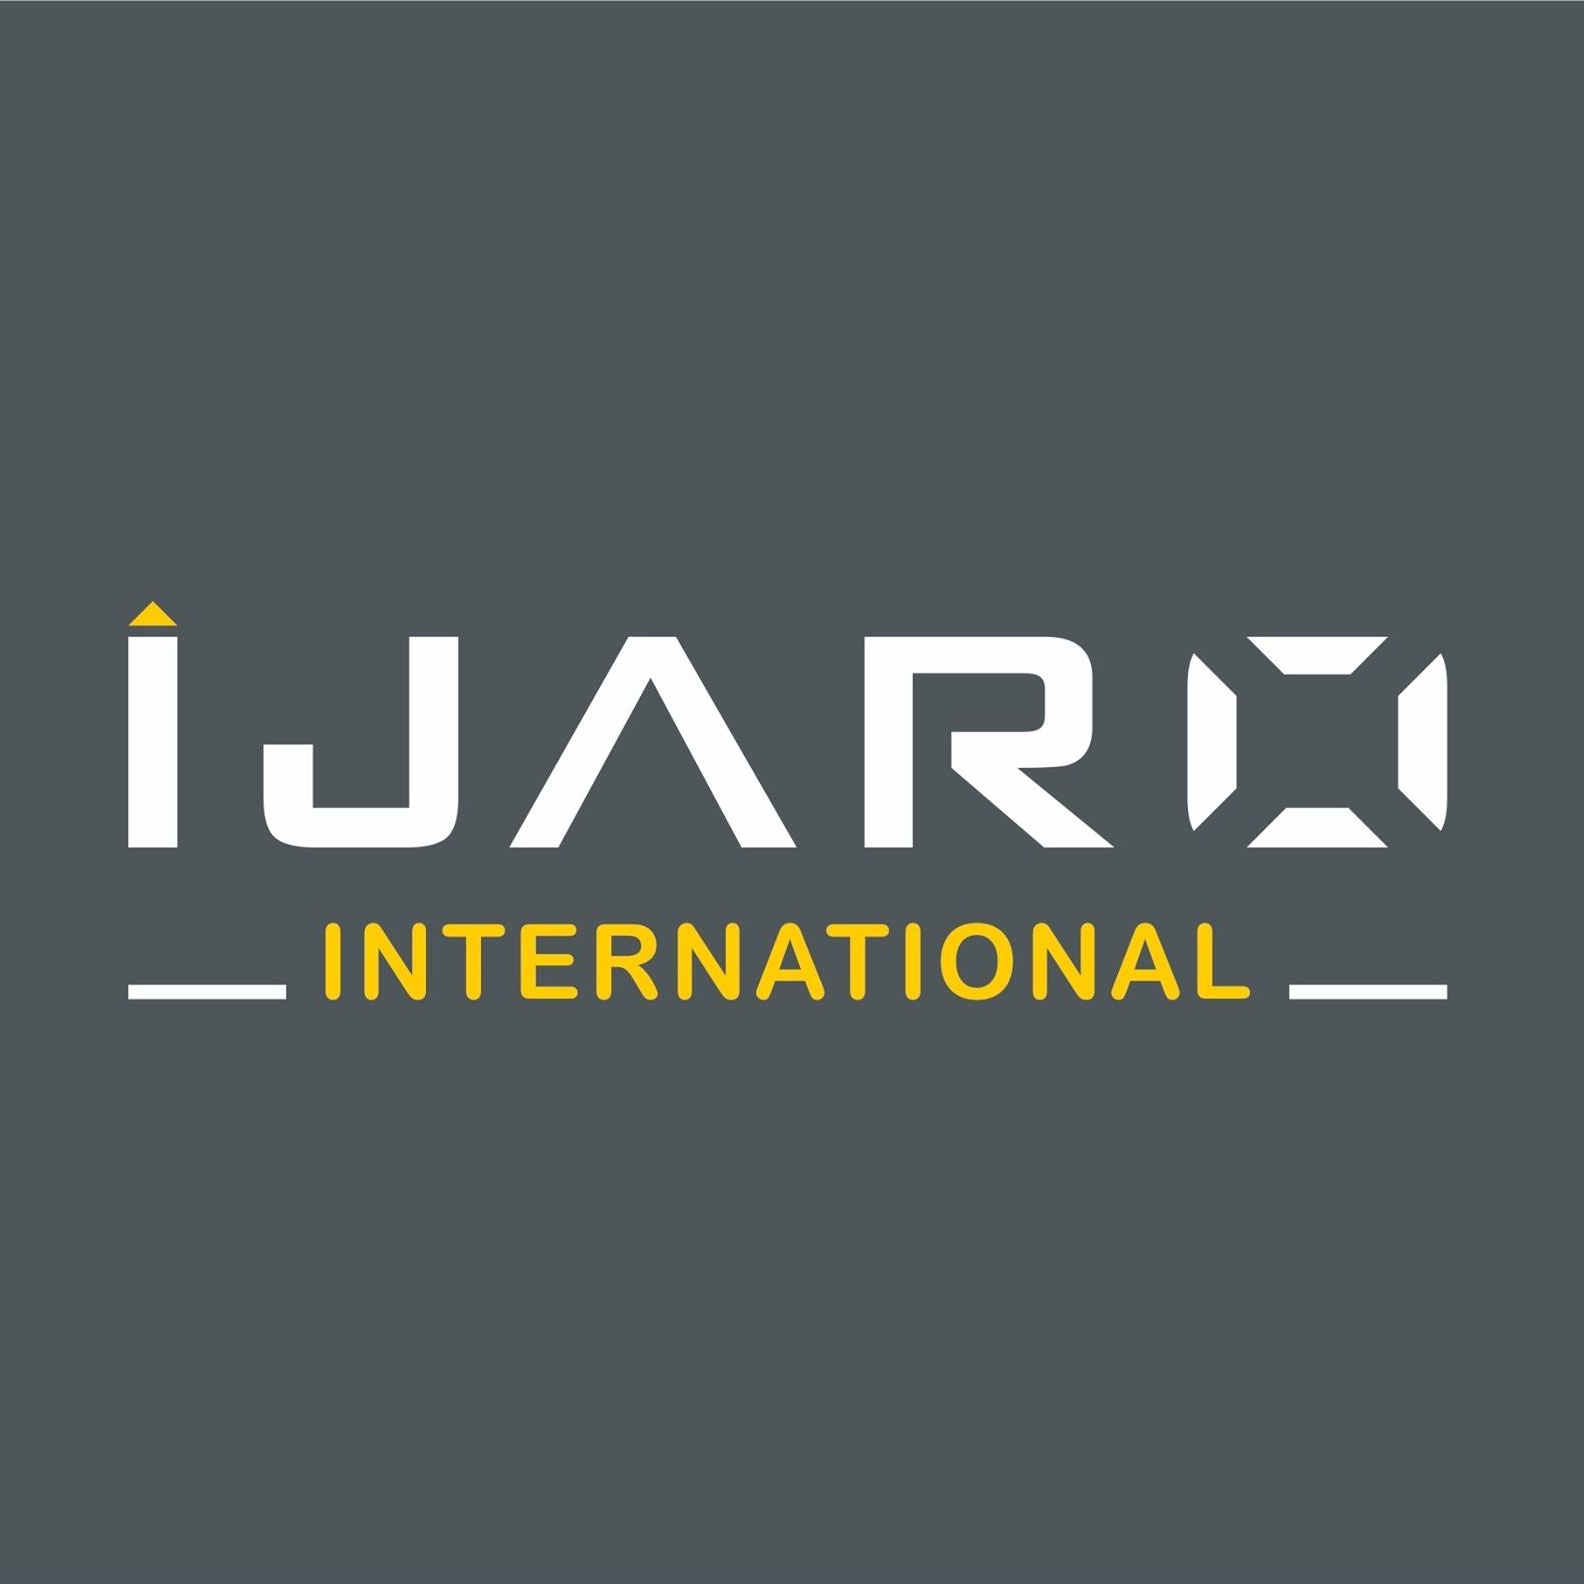 IJARO INTERNATIONAL